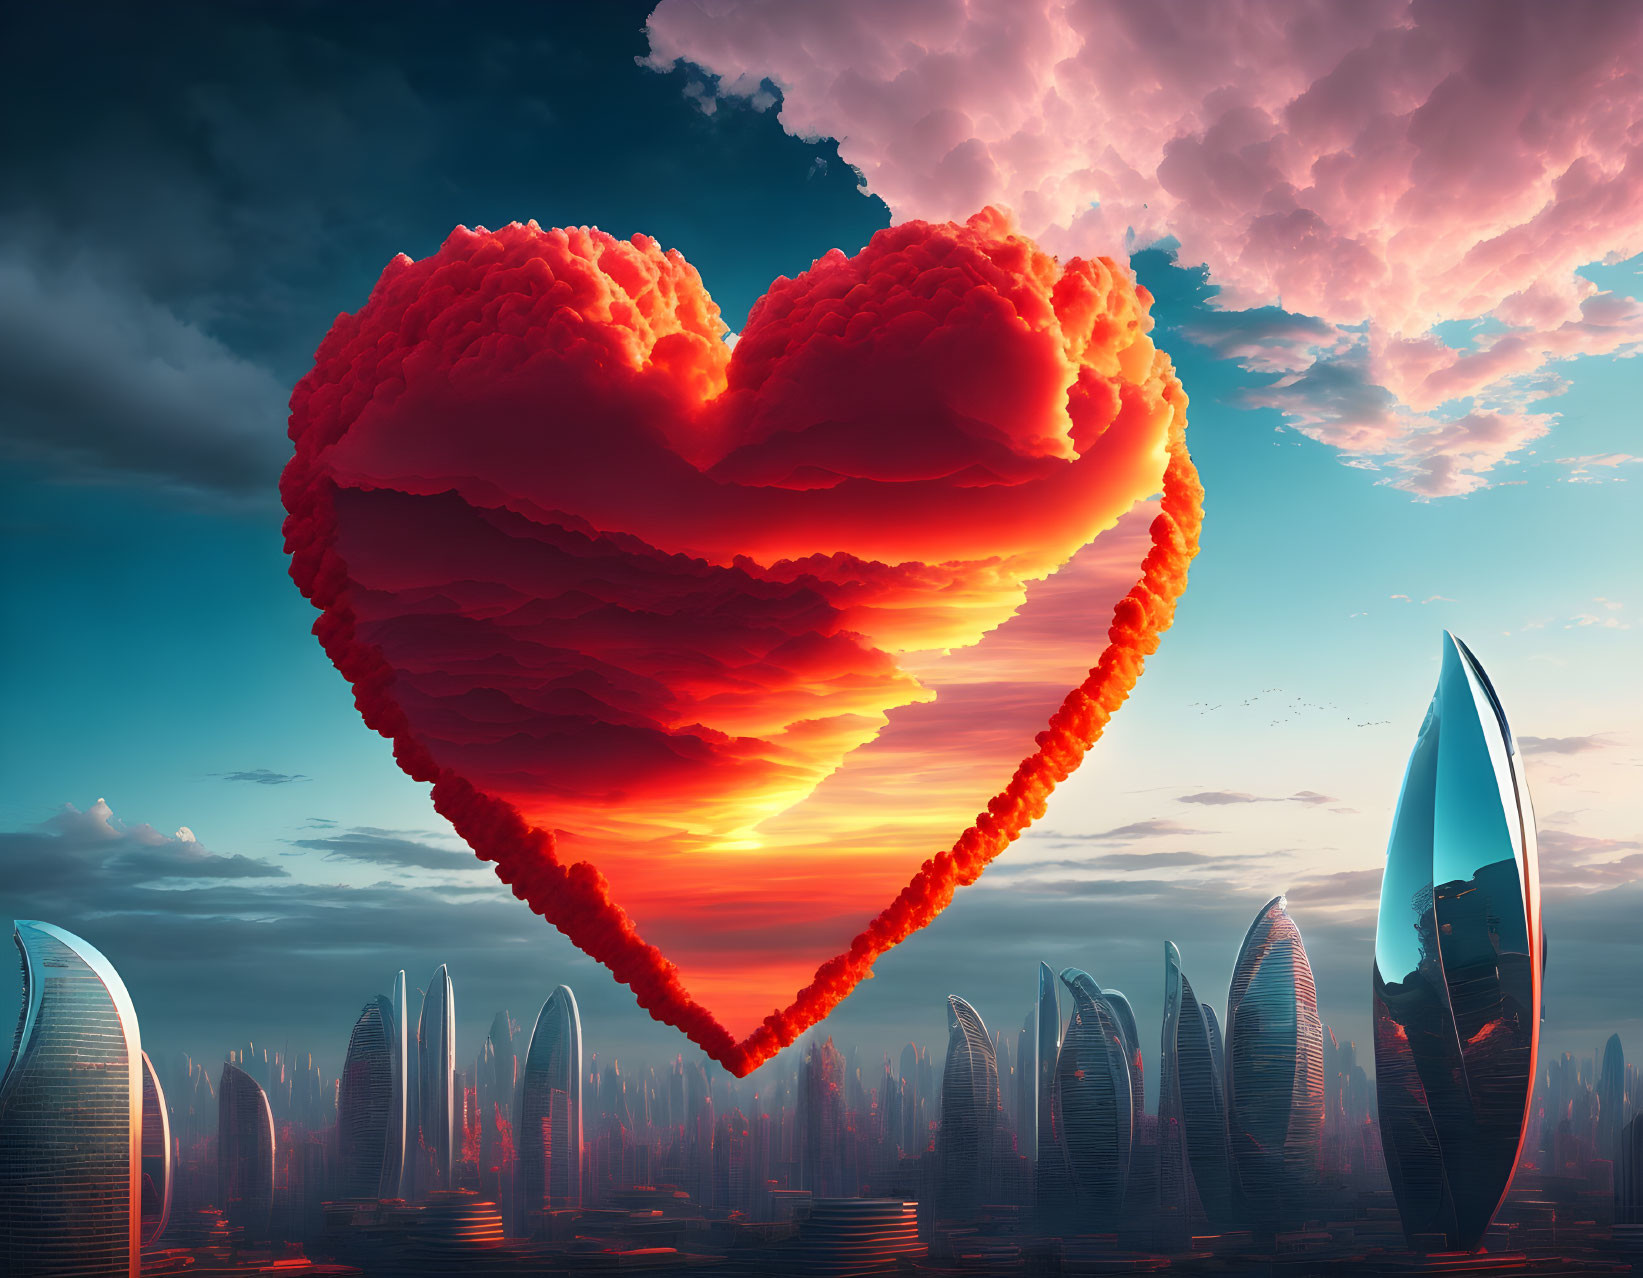 Surreal image: heart-shaped cloud over futuristic cityscape